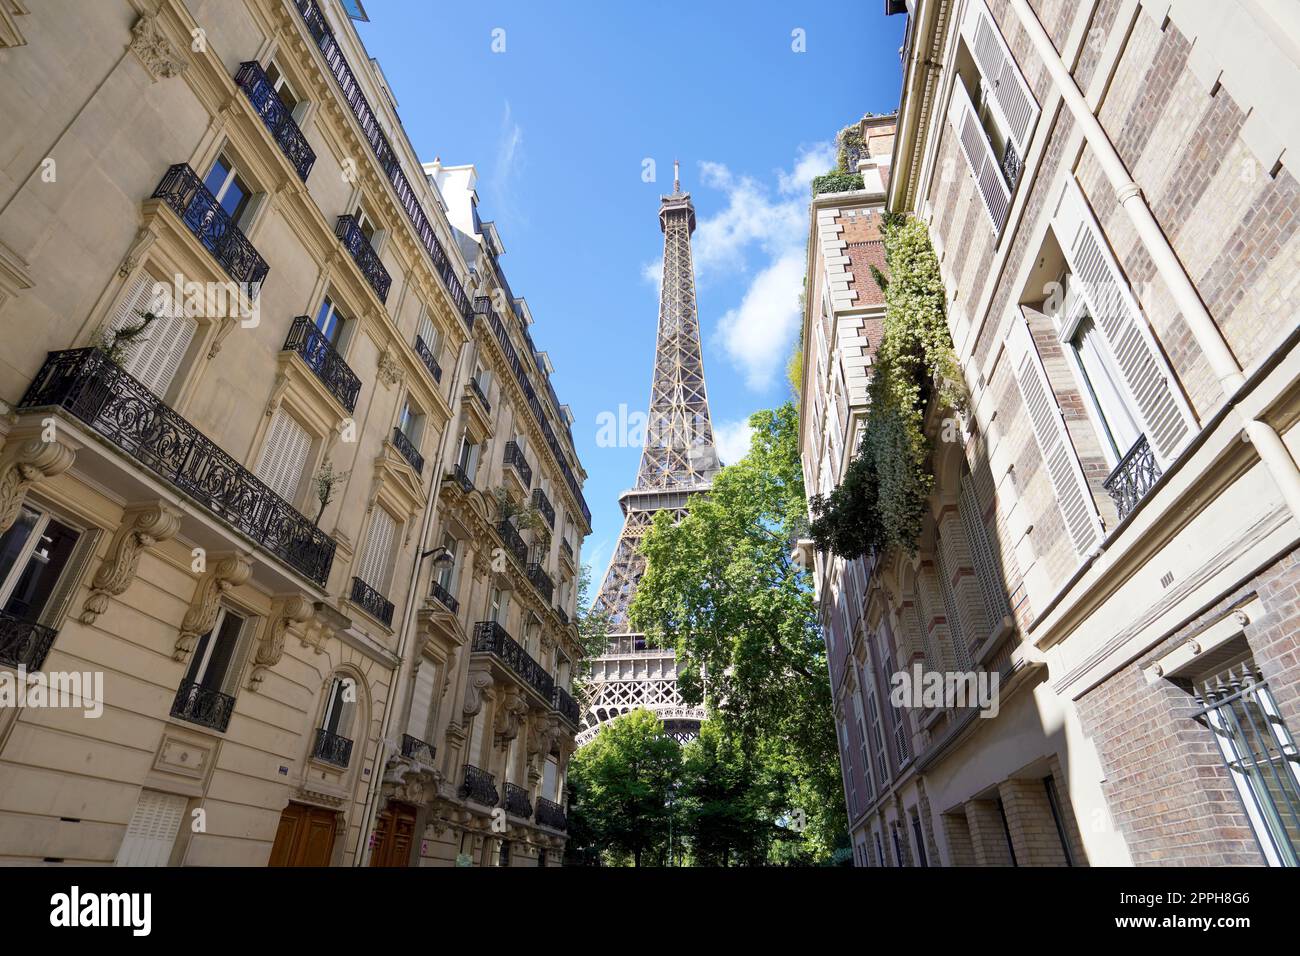 Blick auf den Eiffelturm zwischen Palästen in Rue de l'UniversitÃ, 7. Arrondissement, Paris, Frankreich Stockfoto